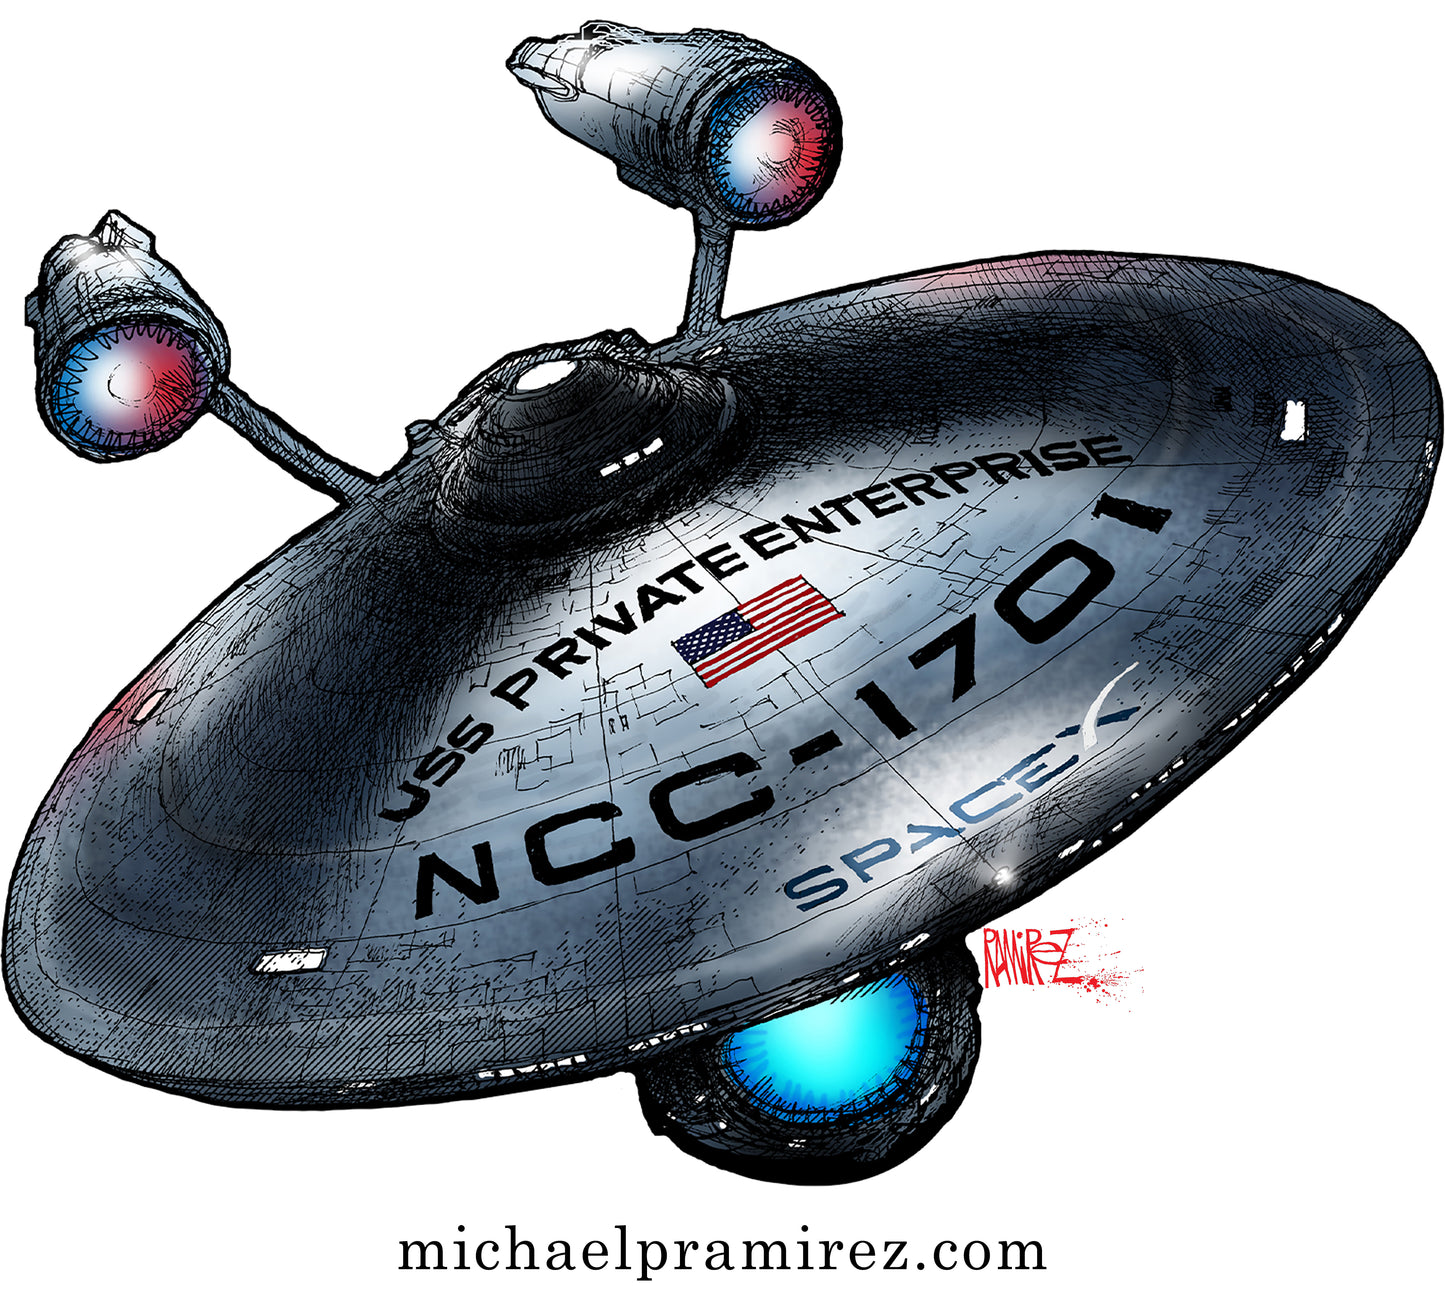 USS Private Enterprise